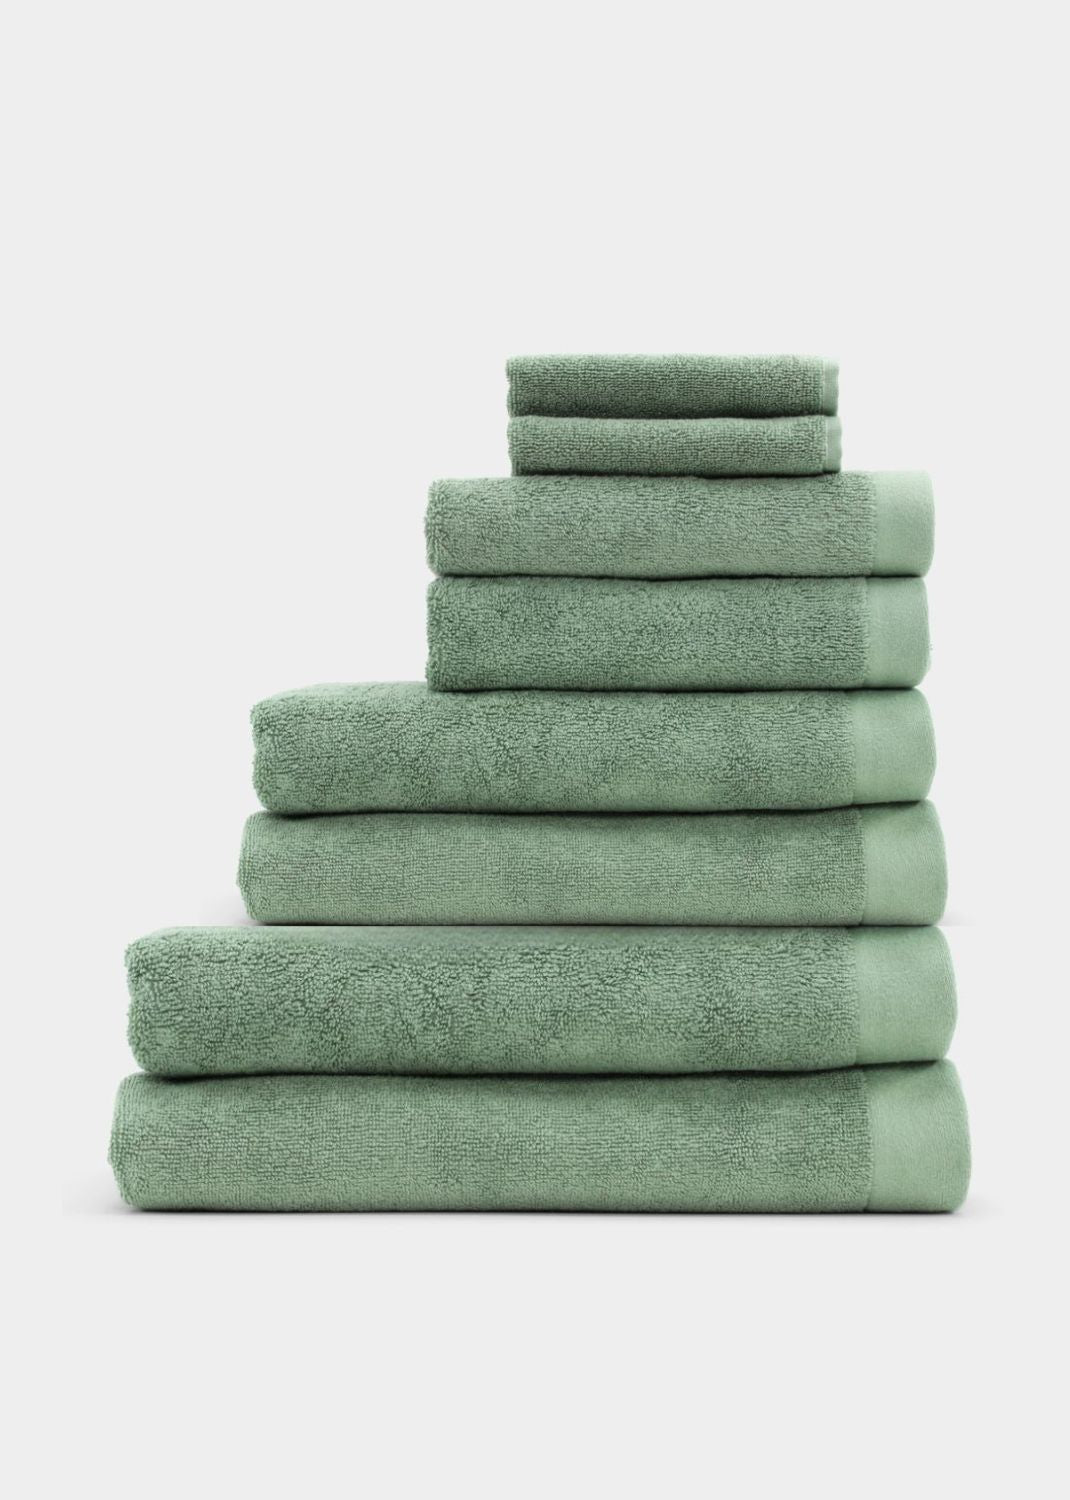 Håndklædepakke 8 stk - Mørkegrøn